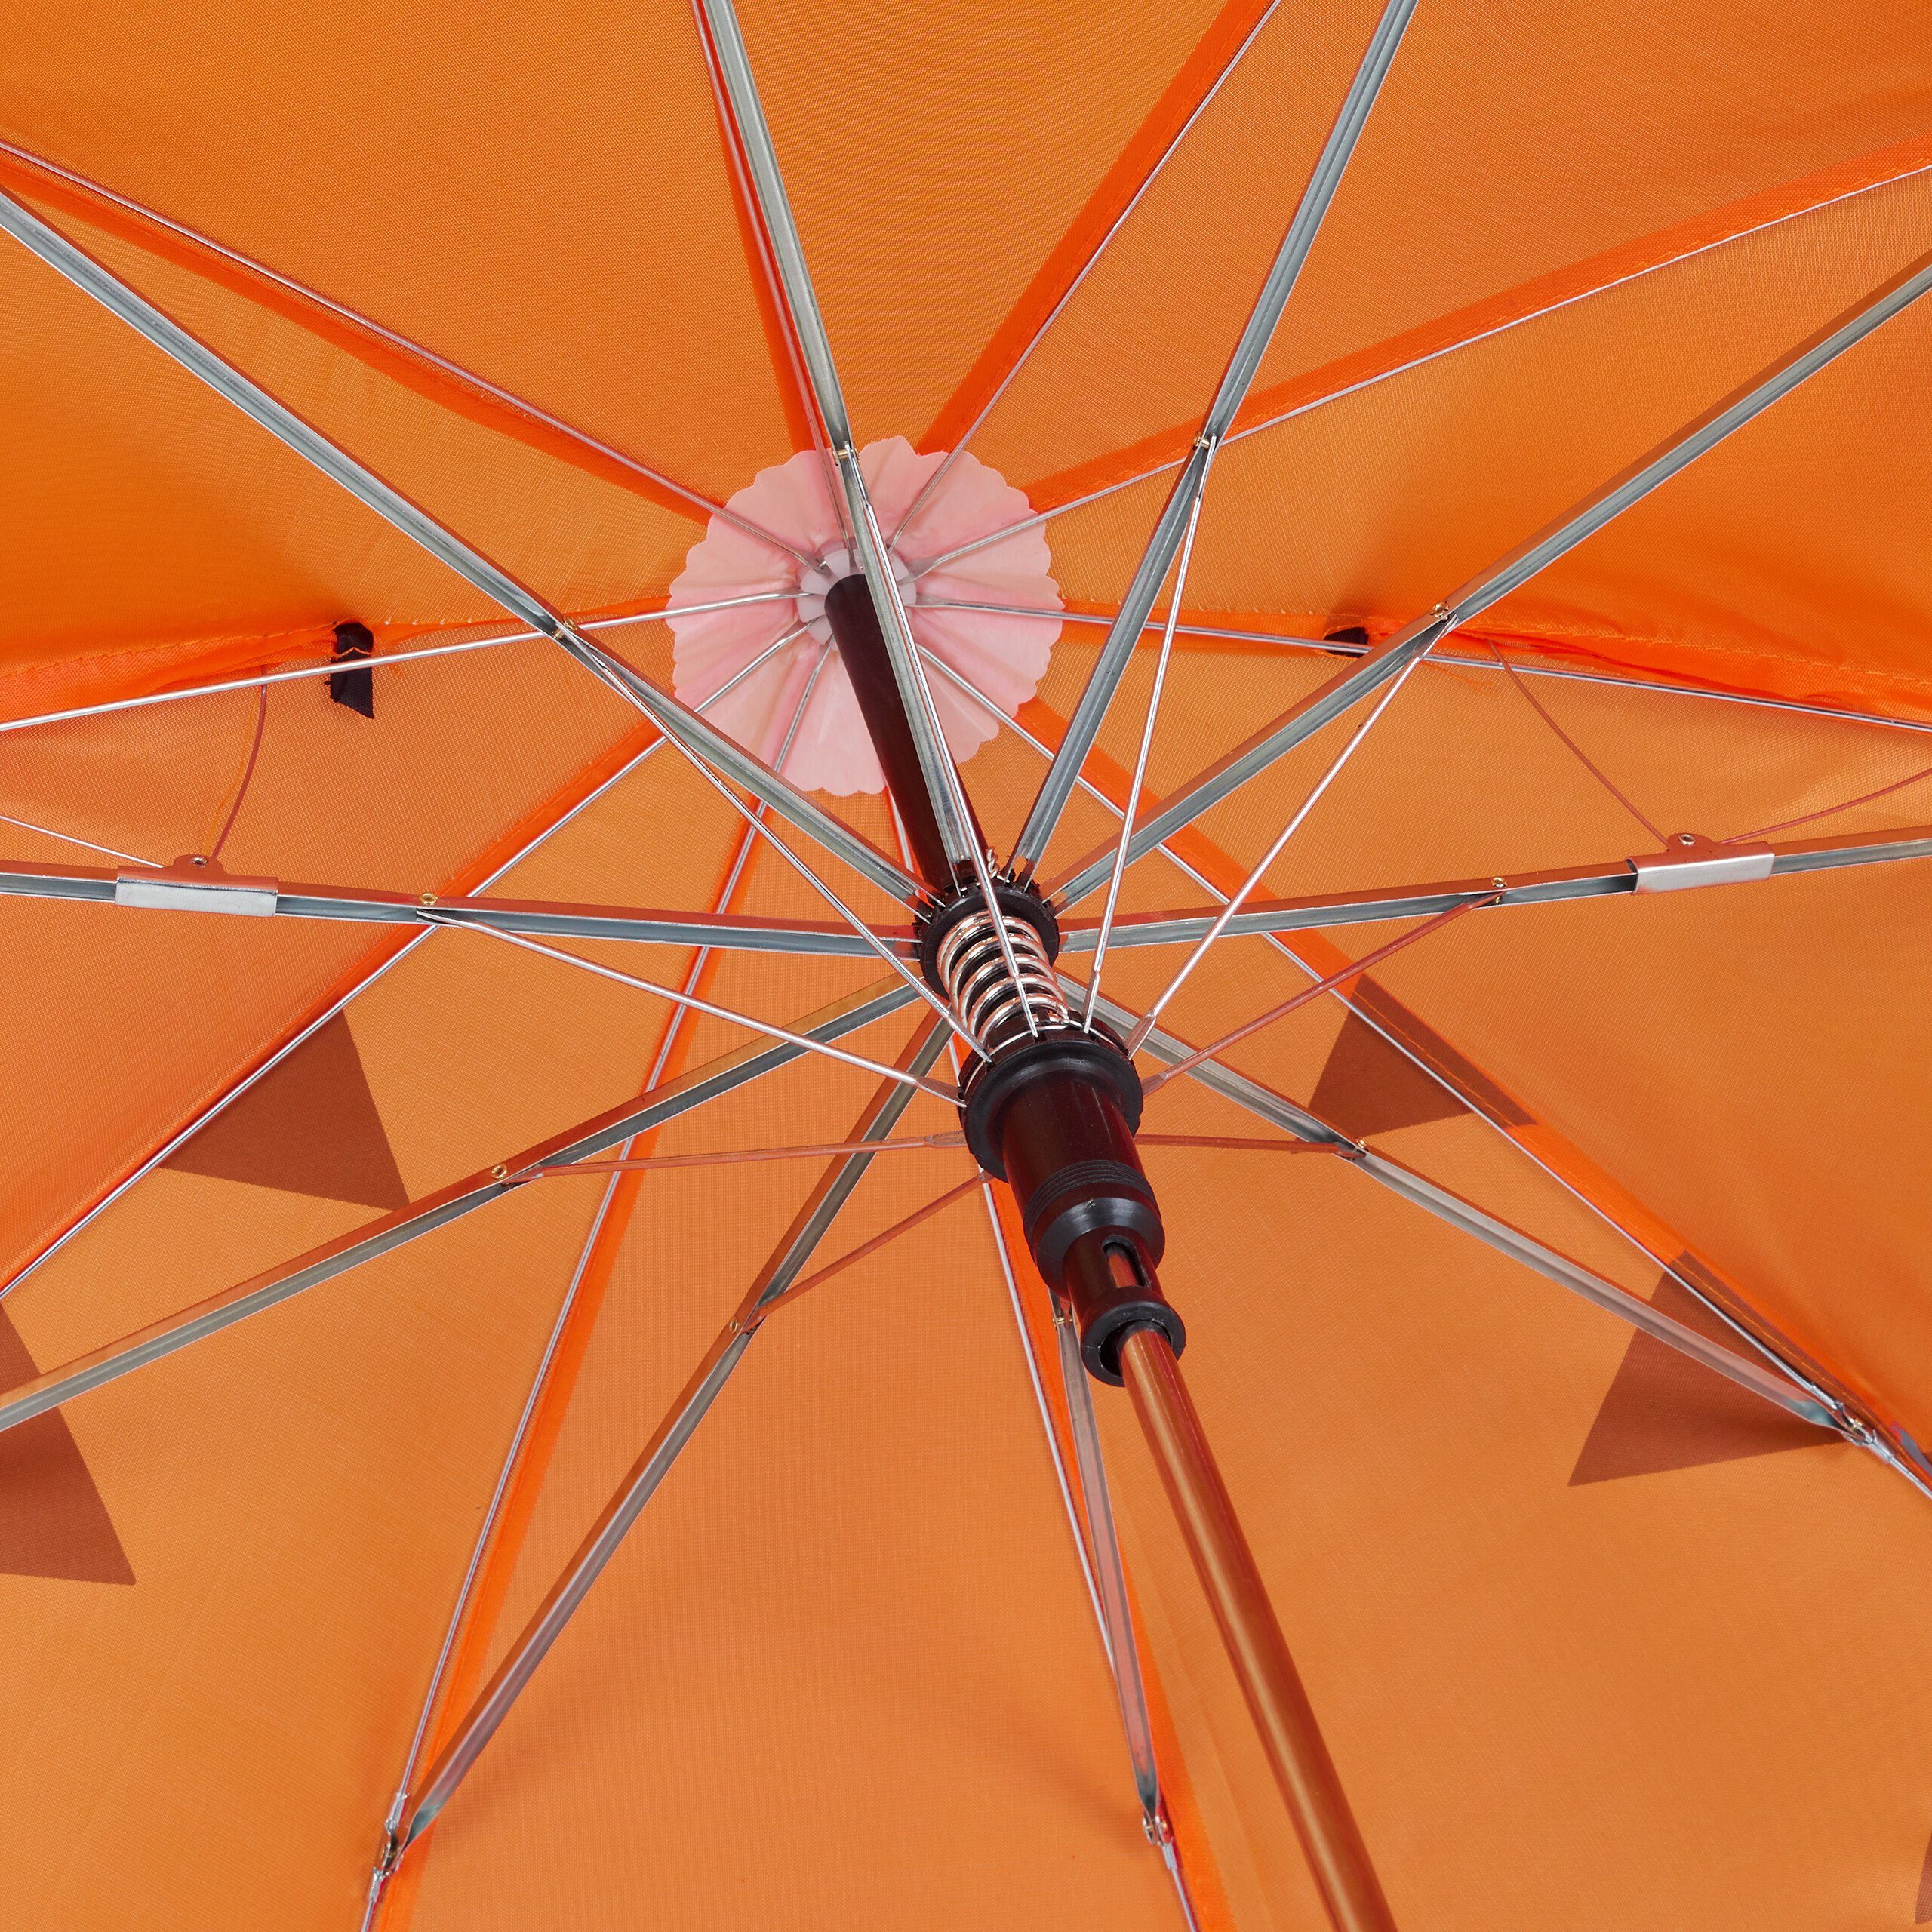 Kinder "Tiger" relaxdays Regenschirm Stockregenschirm